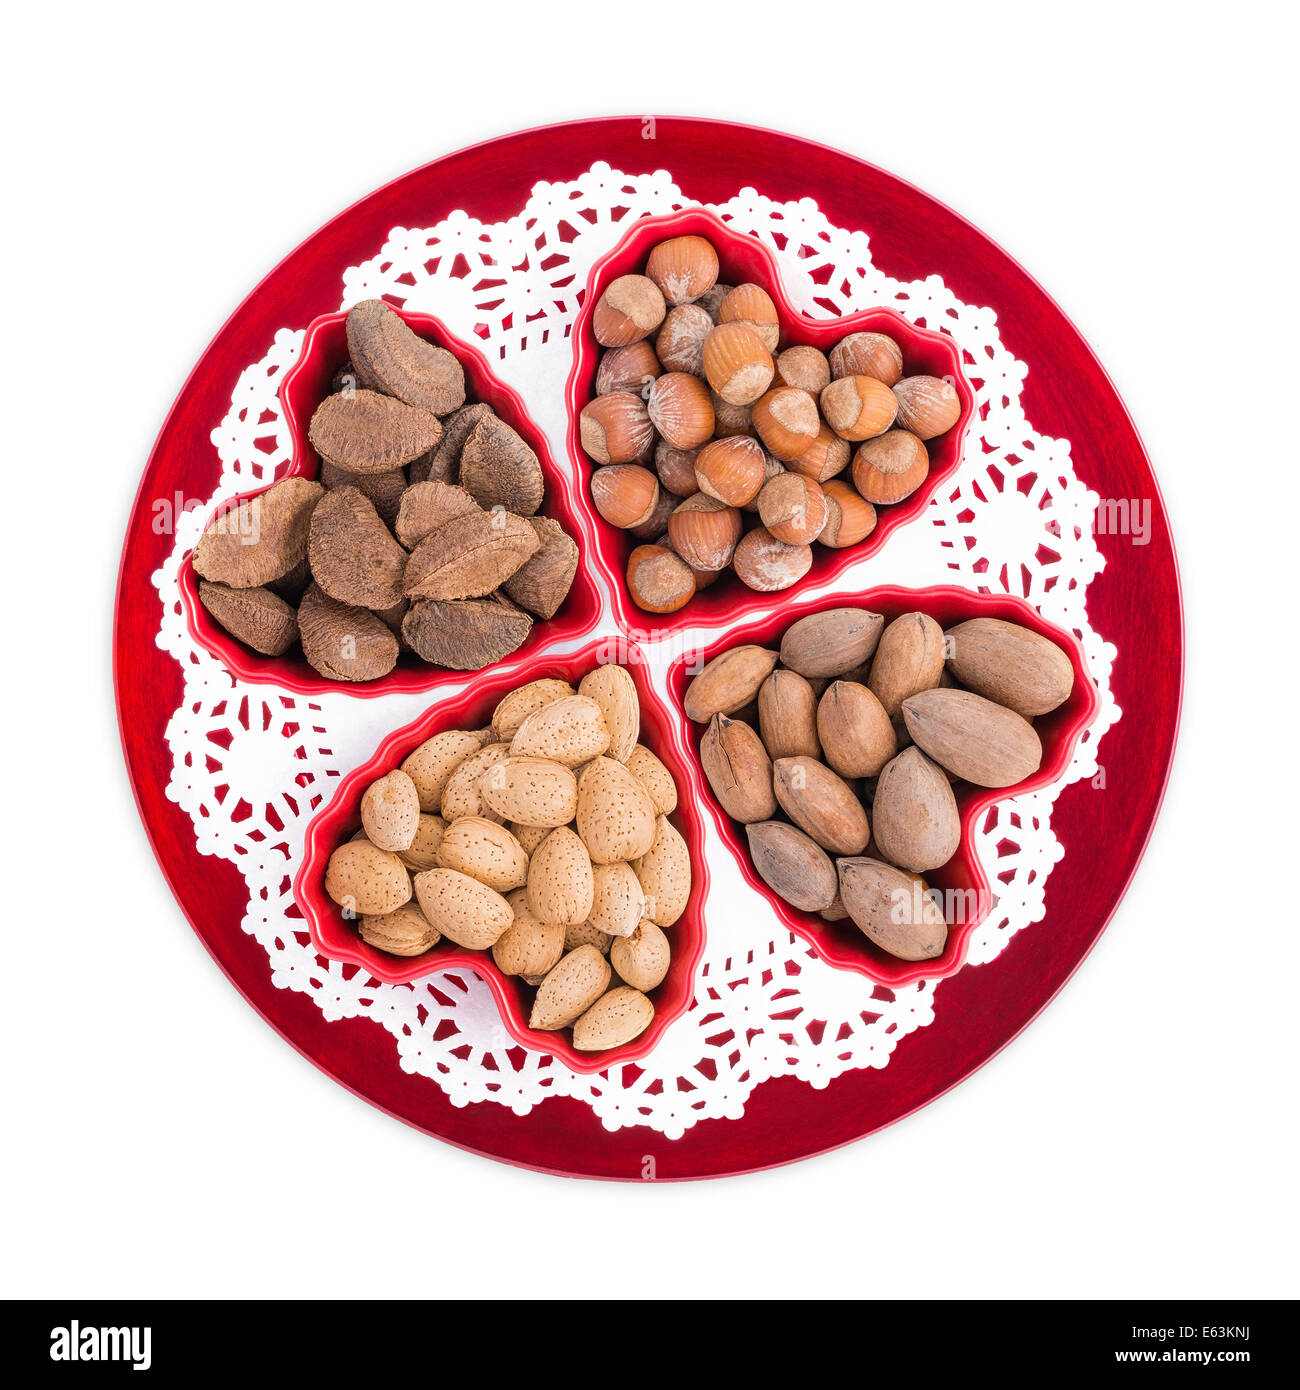 Gruppe Herz-gesunde Nüsse wie Mandeln, Haselnüsse, Pekannüsse und Paranüsse in Herz-Form-Schalen auf einer roten Platte angezeigt Stockfoto